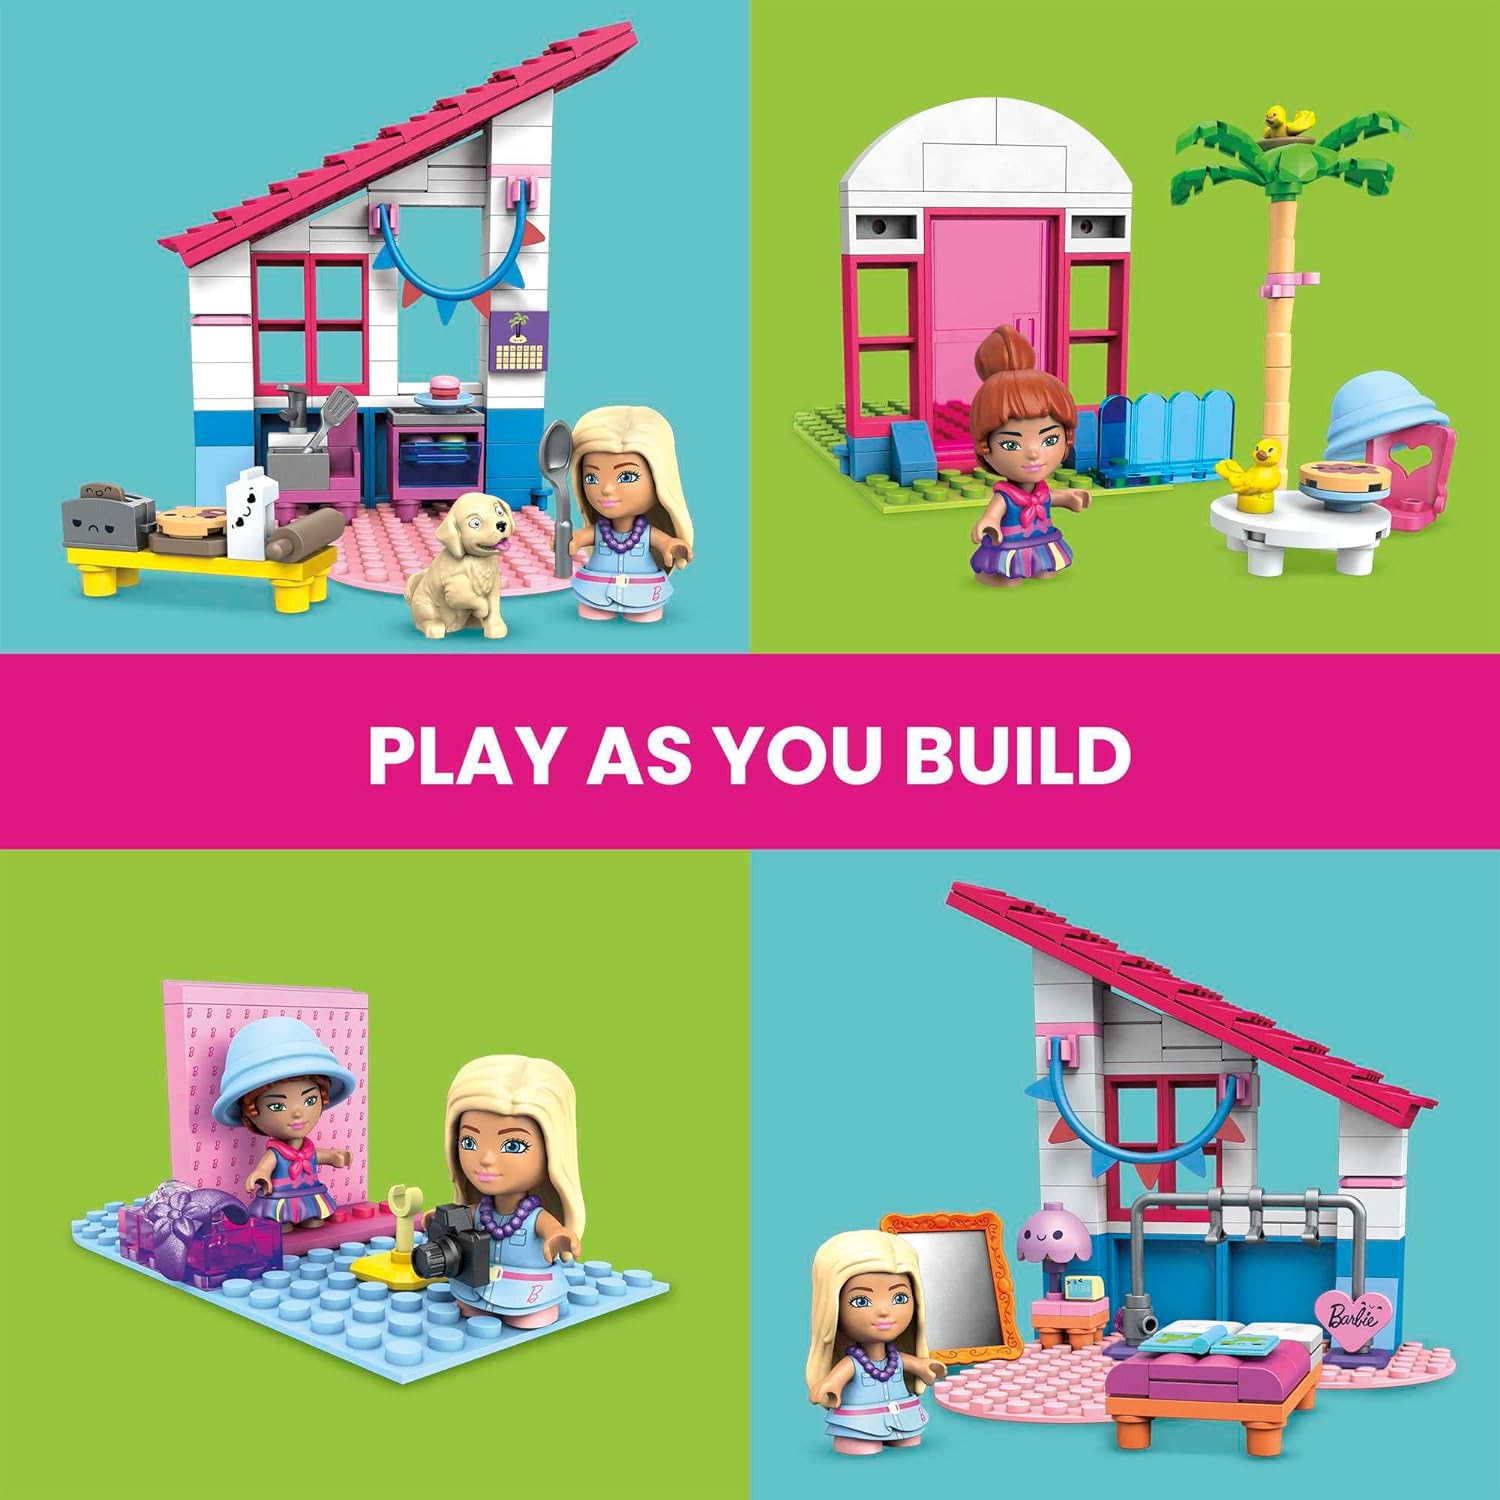 مجموعة ألعاب البناء ميجا باربي، منزل أحلام ماليبو مع 303 قطعة، 2 دمى صغيرة، إكسسوارات وأثاث، 3 حيوانات أليفة